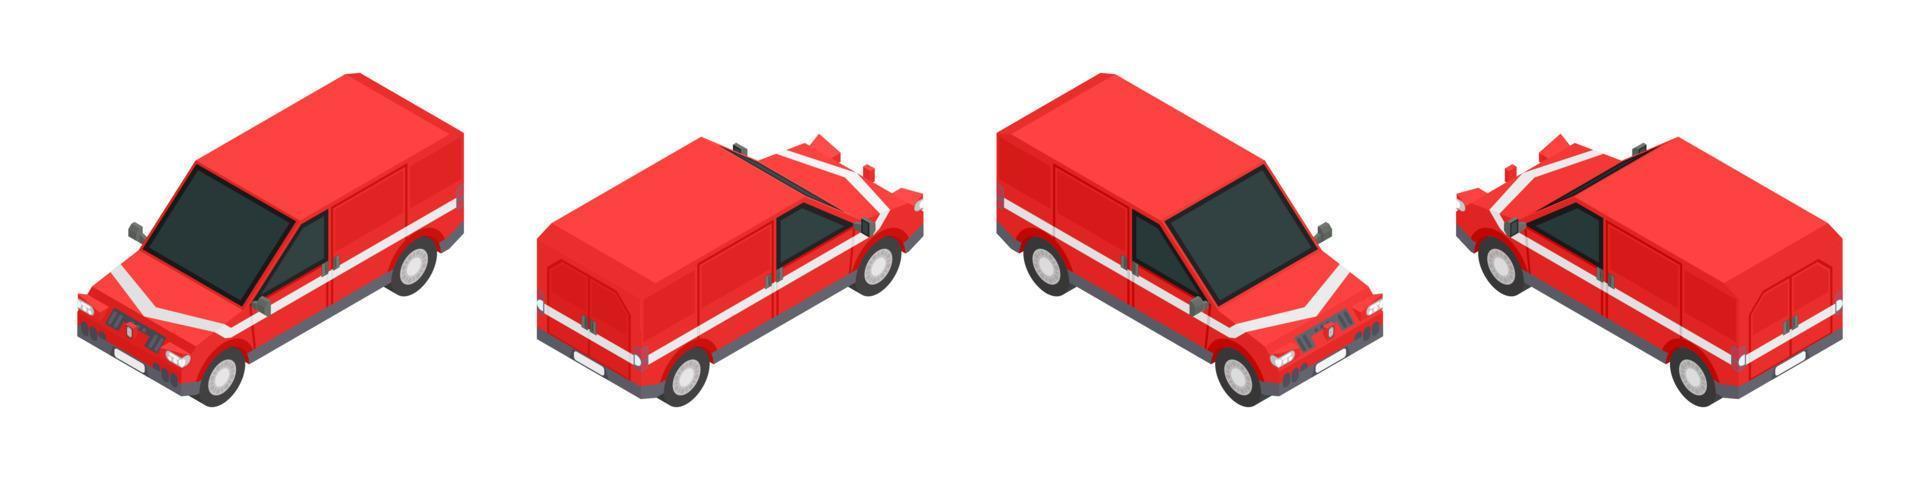 impostare il vettore di stock di camion isometrico rosso